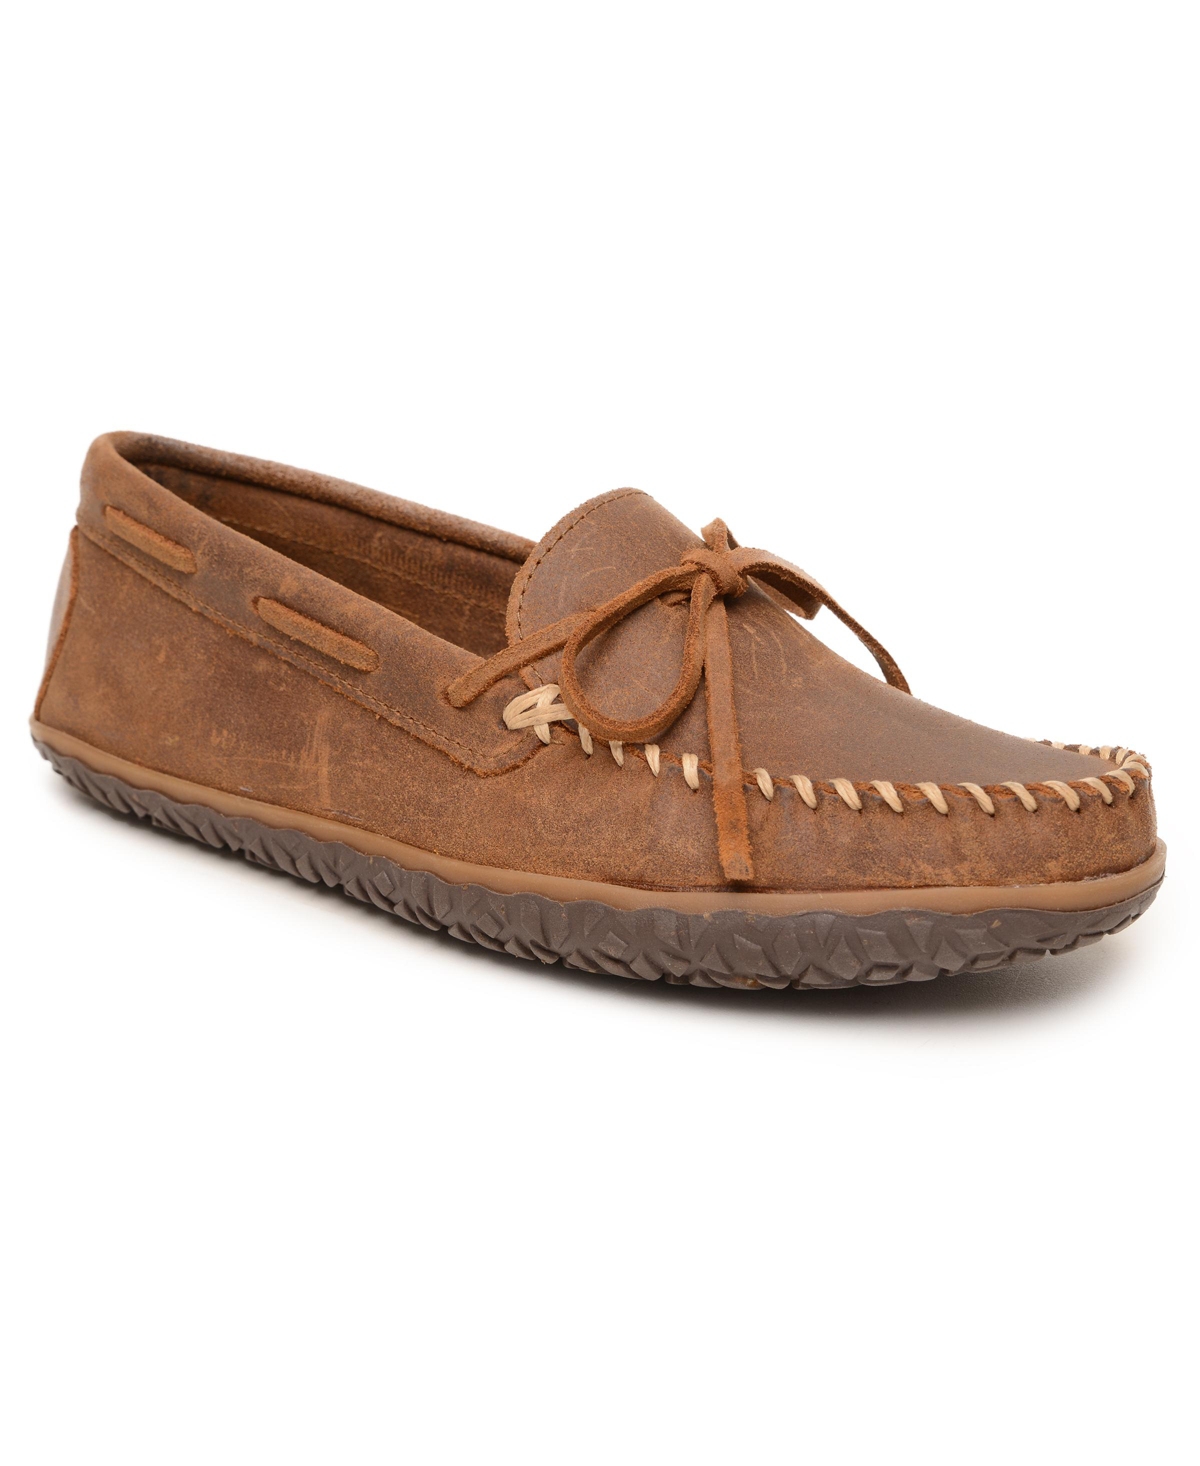 Men's Tie Tread Loafers - Brown